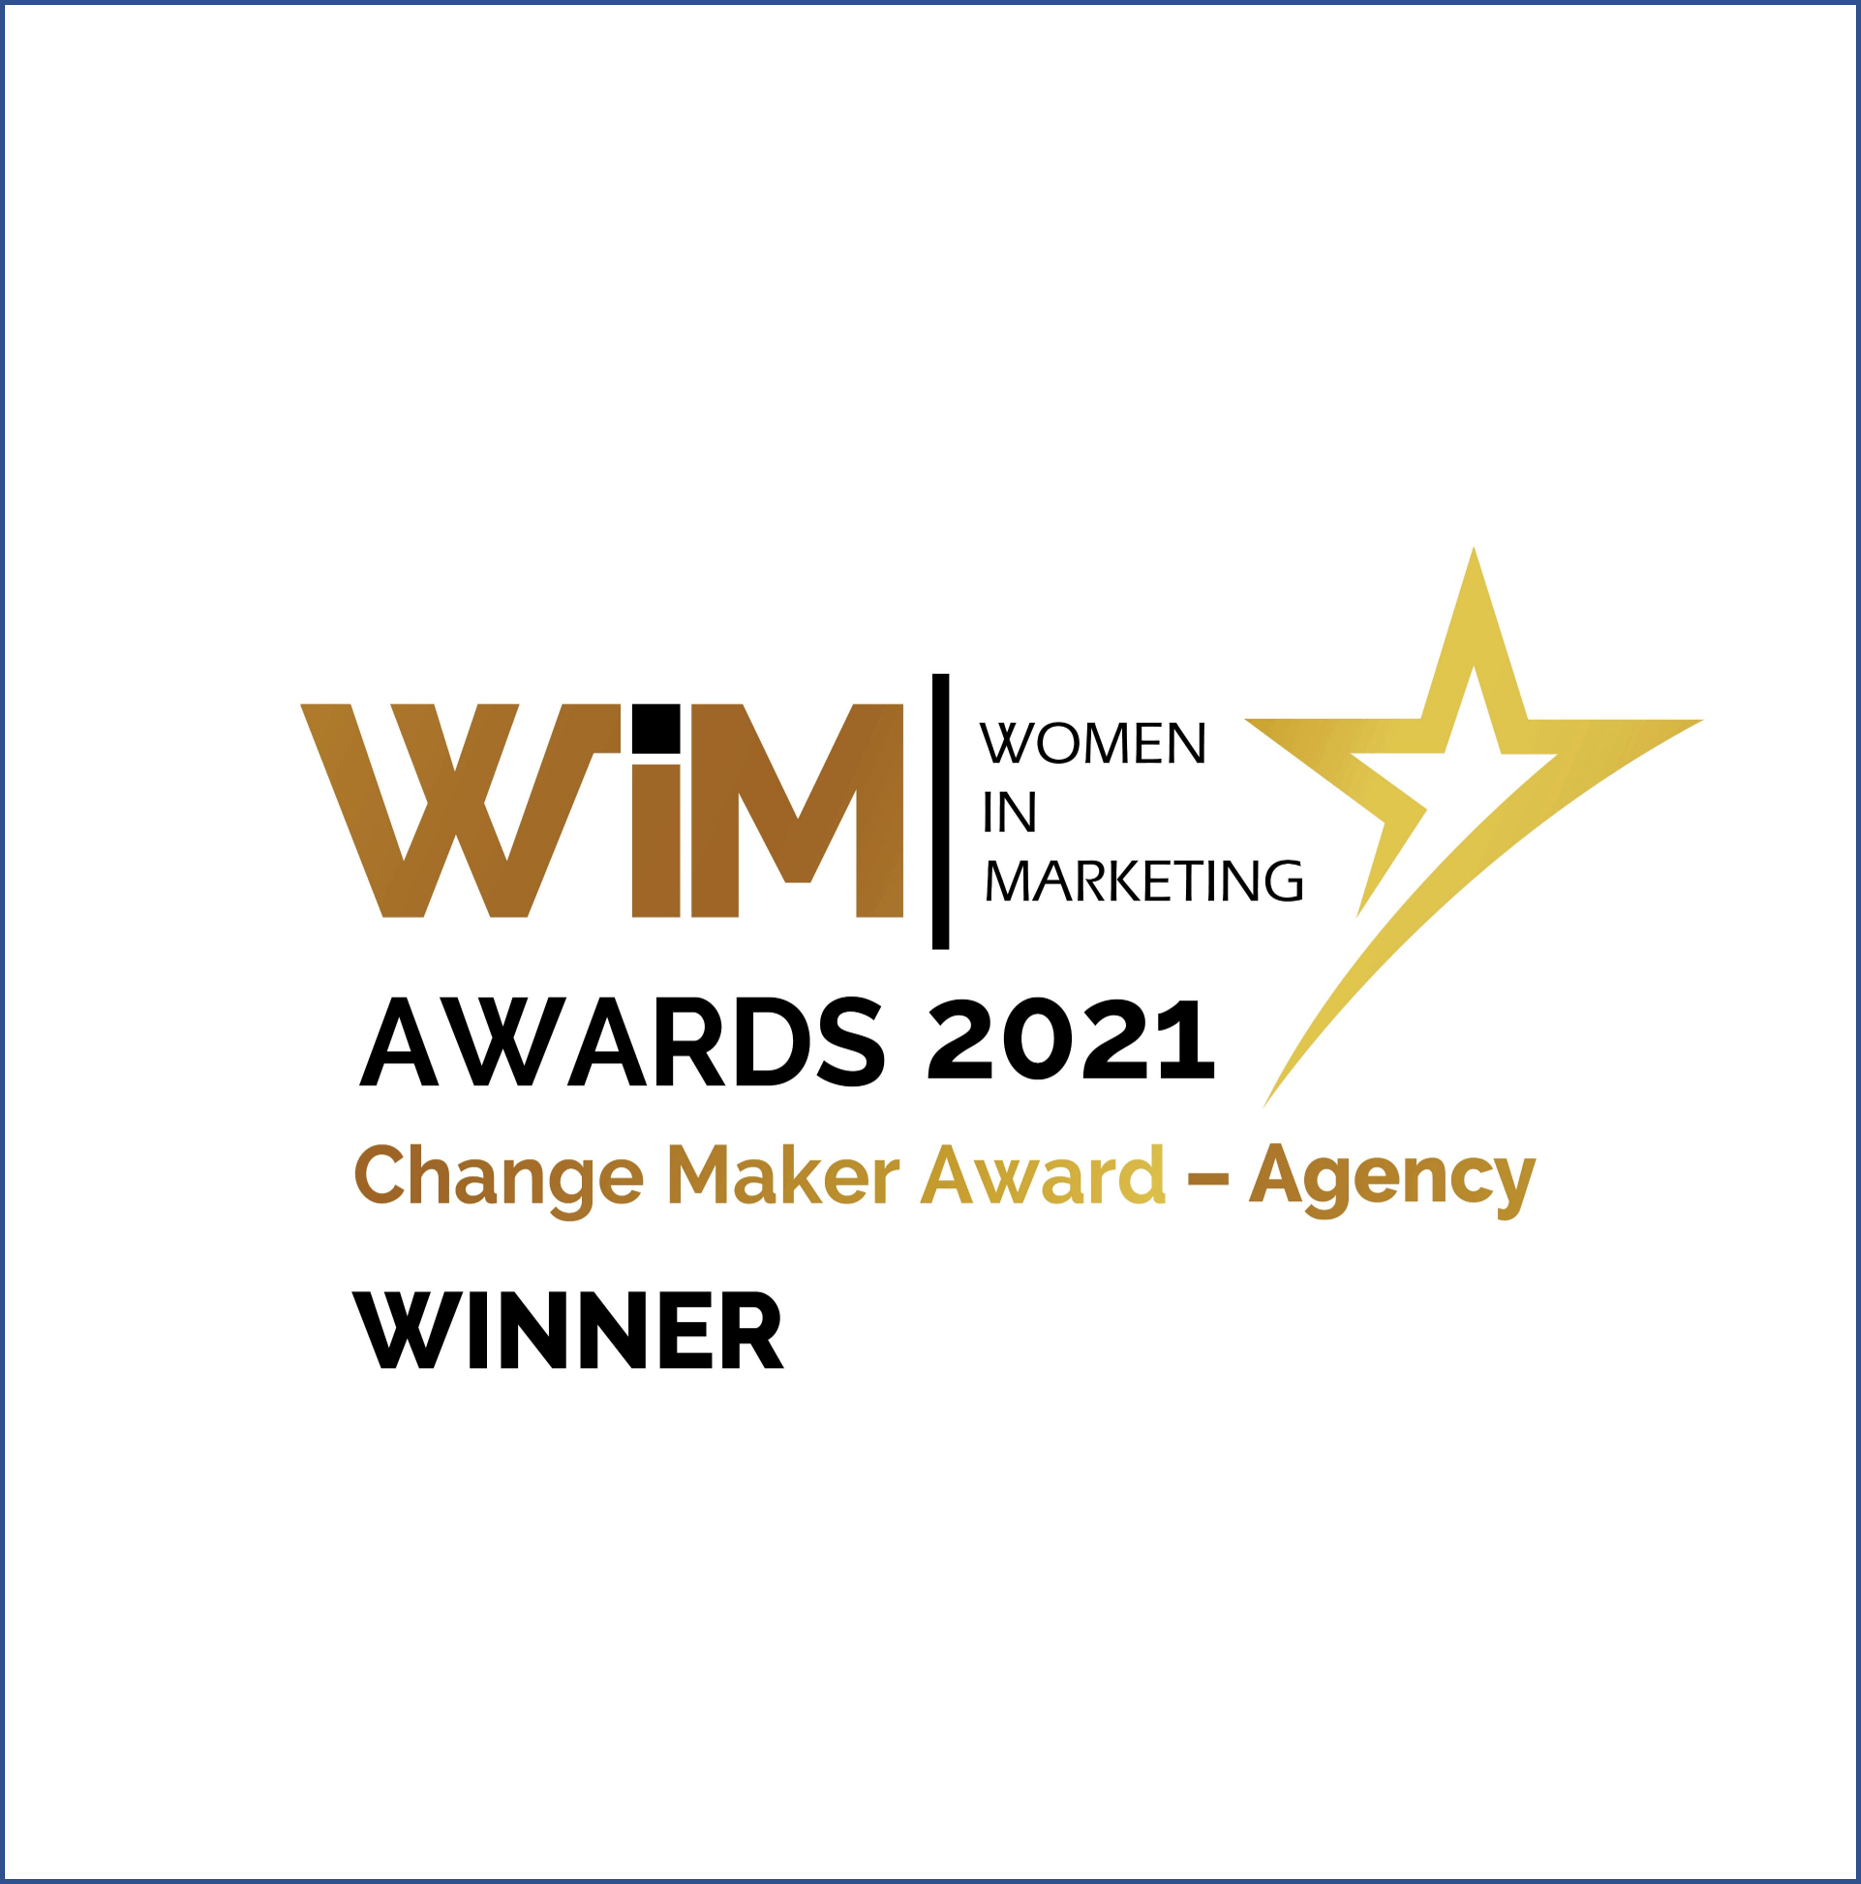 Winners logo for Women in Marketing Awards 2021.